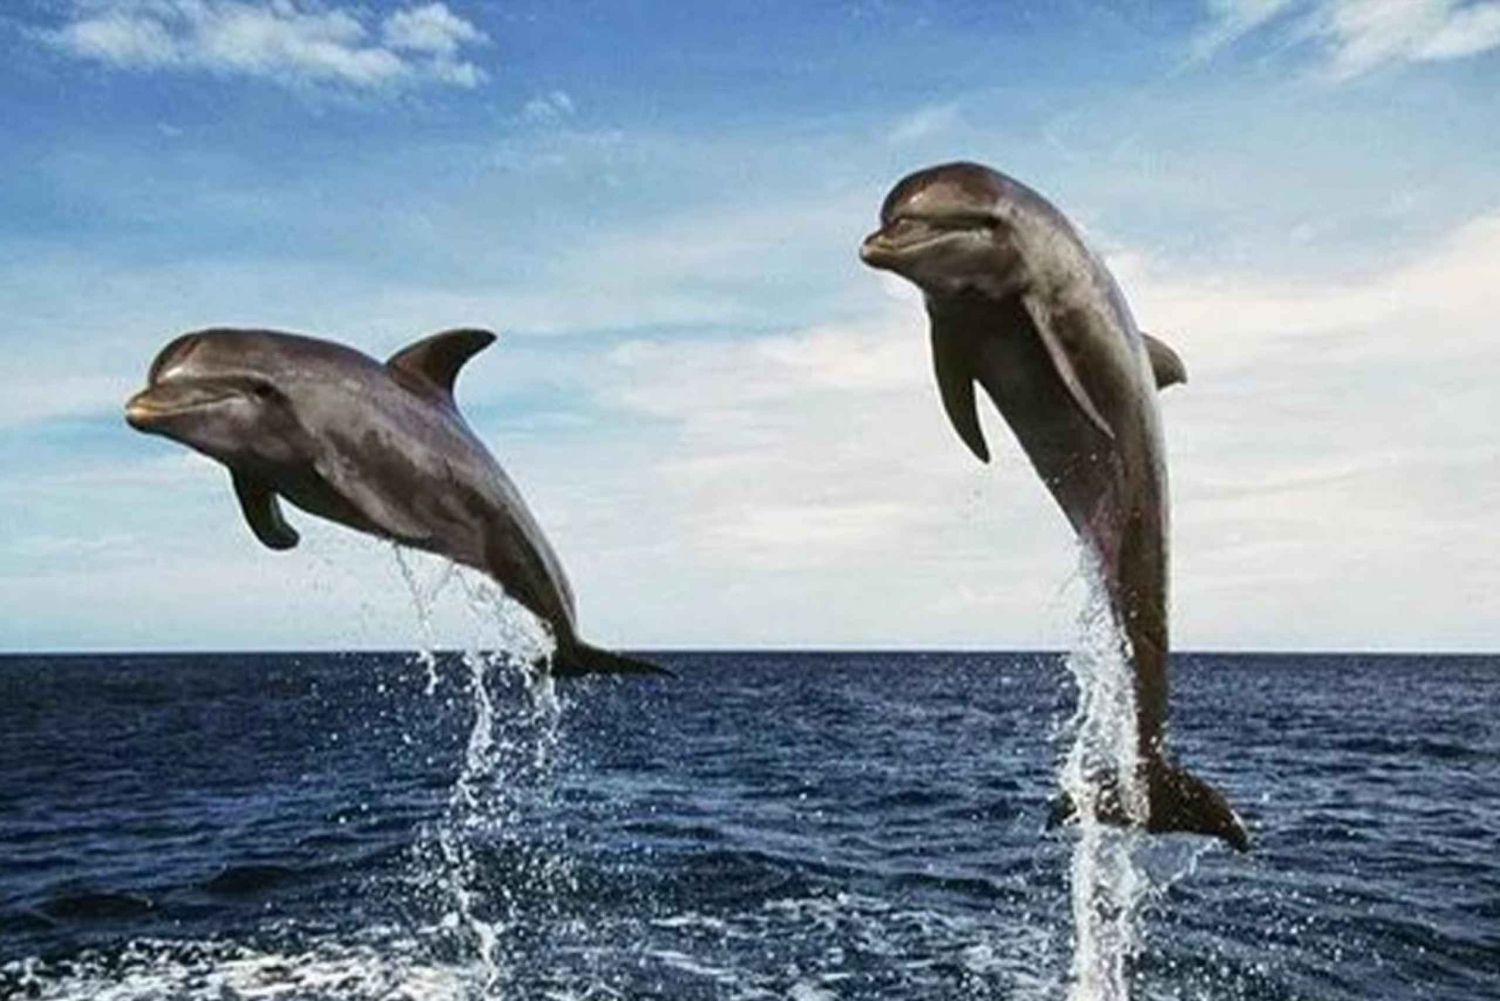 Plaża Lovina: Rejs z nurkowaniem i obserwacją delfinów o wschodzie słońca